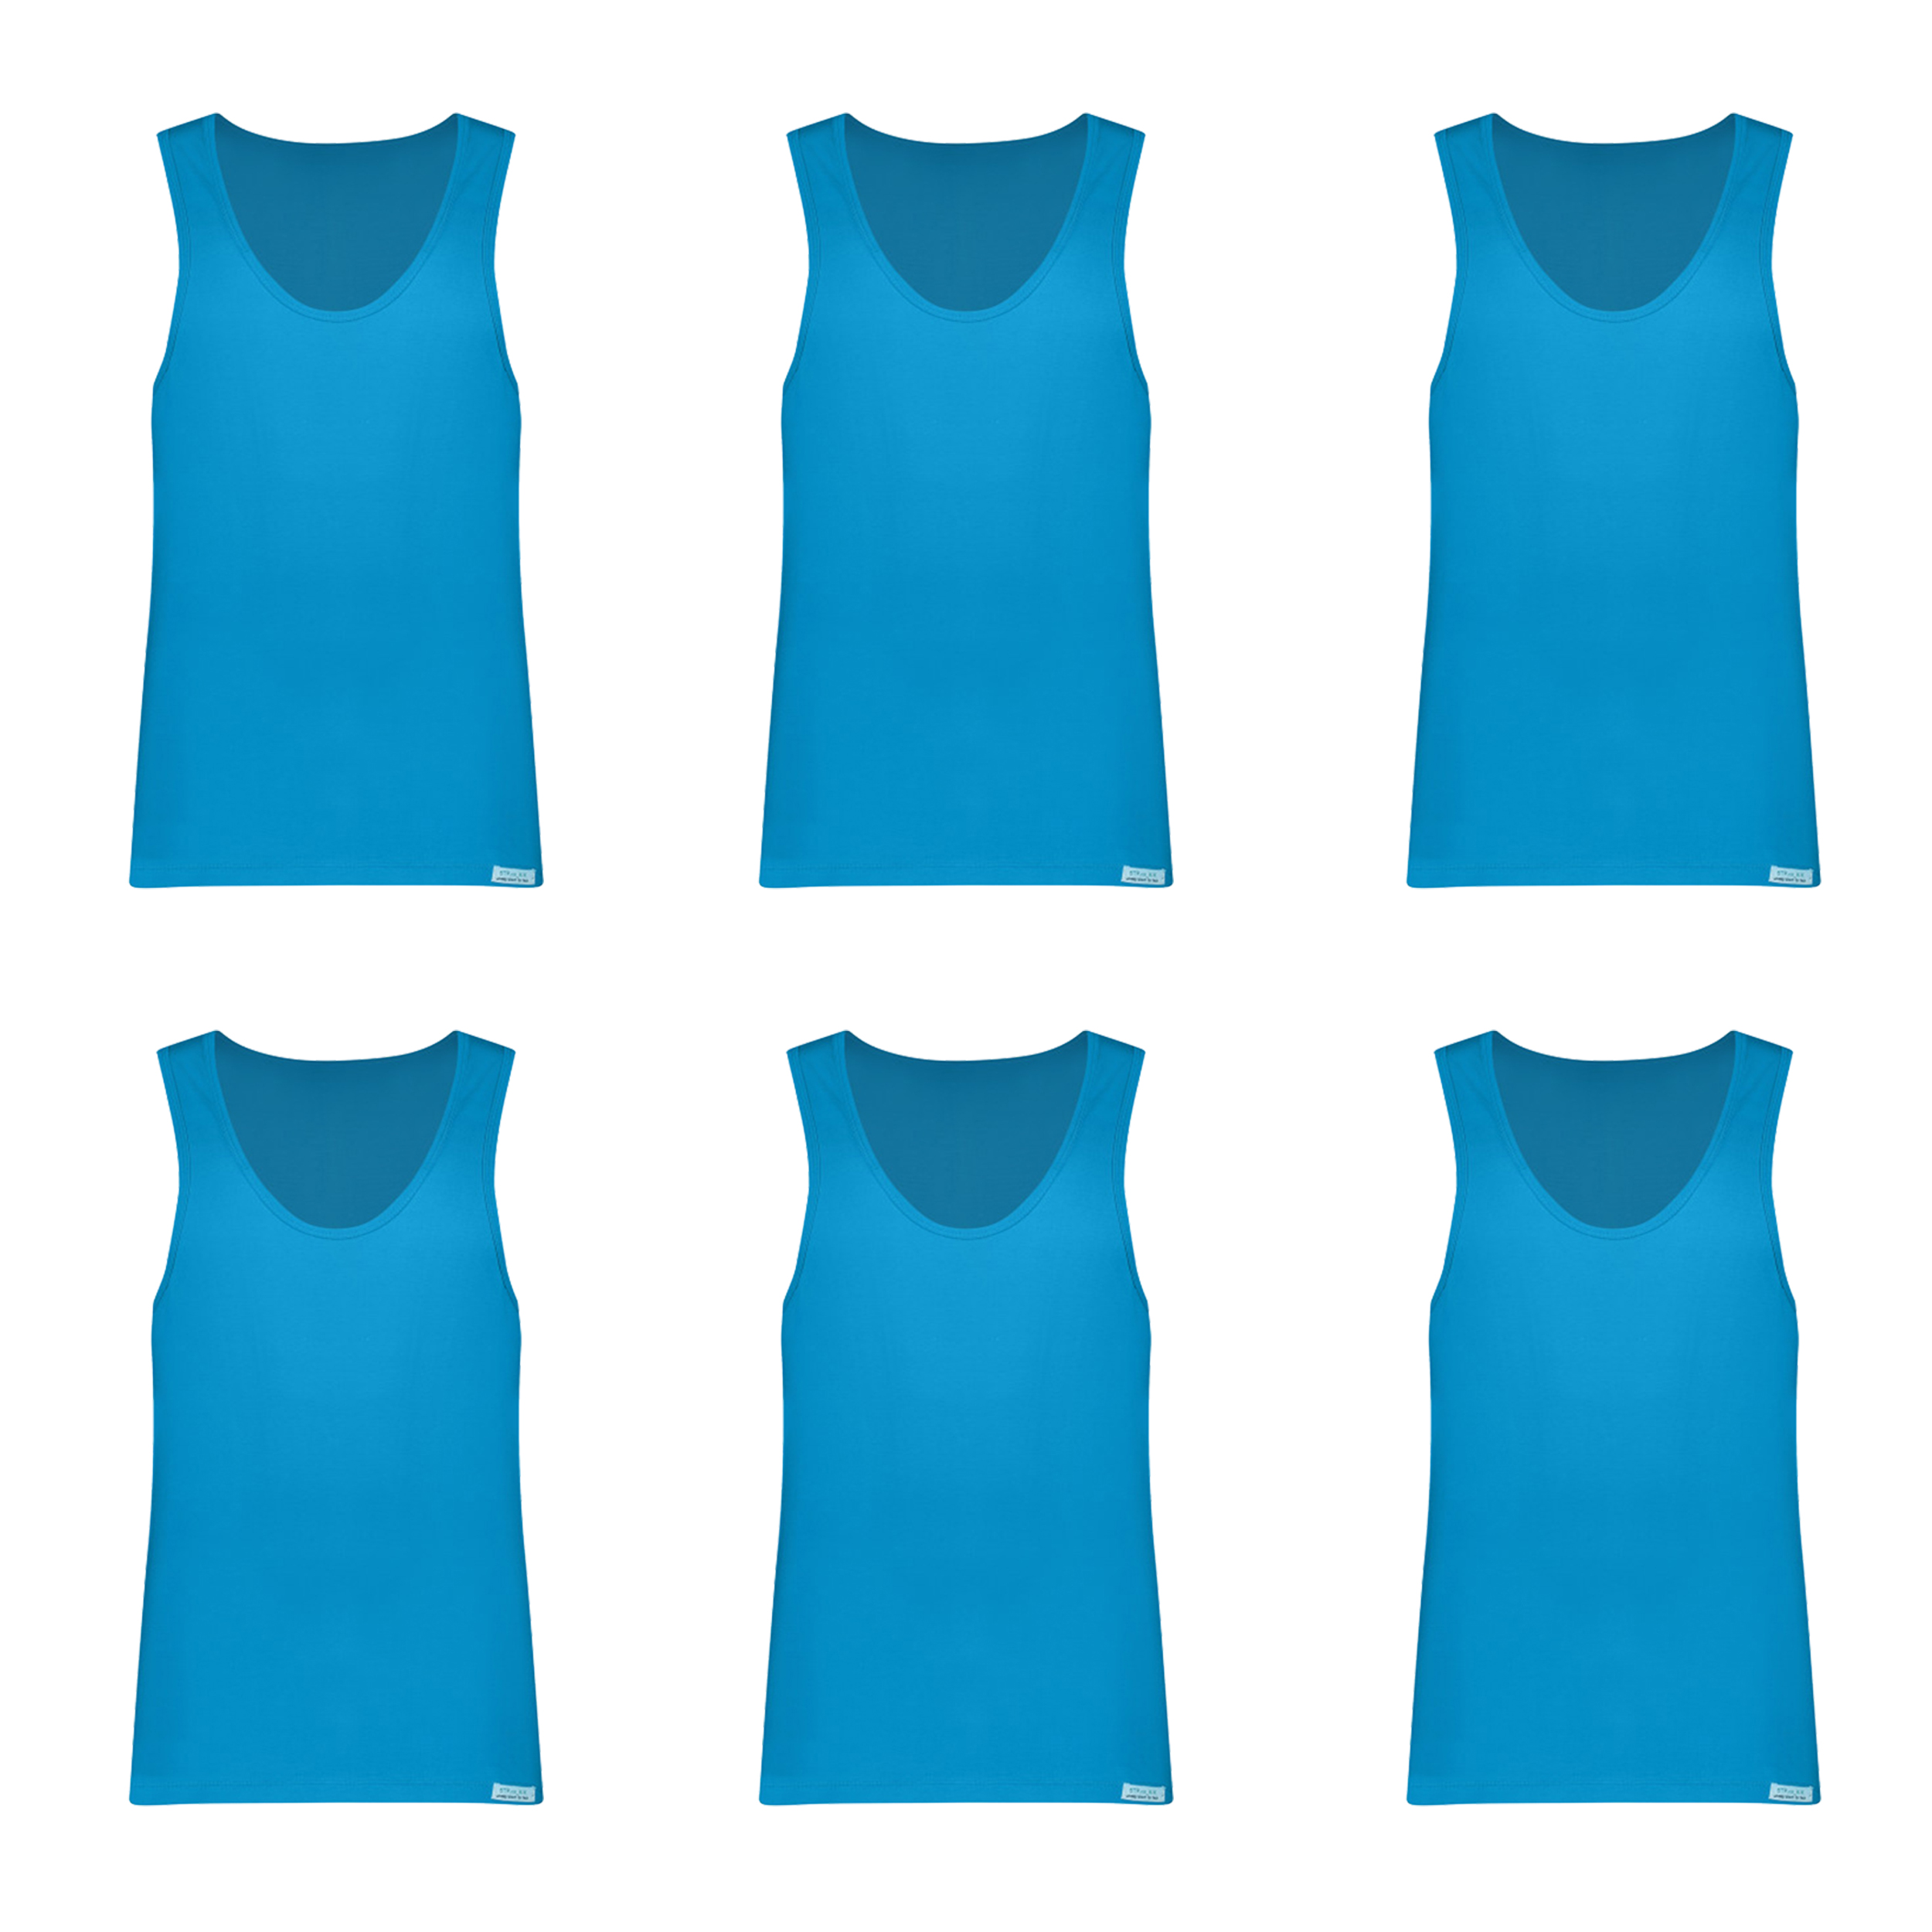 زیرپوش رکابی مردانه برهان تن پوش مدل 3-01 رنگ آبی فیروزه ای بسته 6 عددی